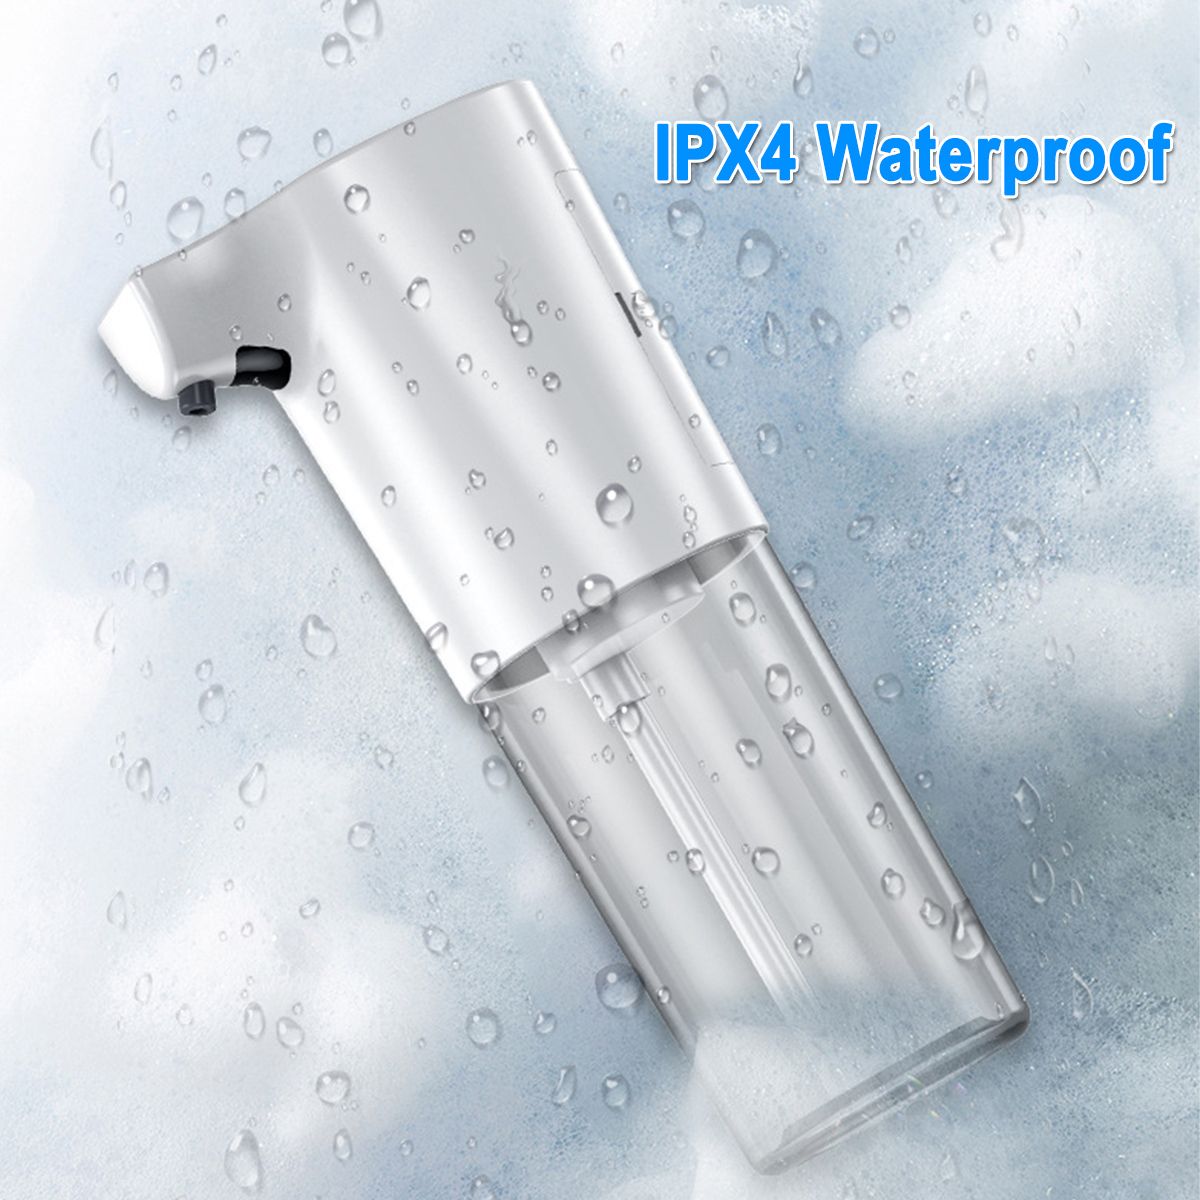 Automatic-Soap-Dispenser-IR-Sensor-Foam-Liquid-Dispenser-Waterproof-Hand-Washer-Soap-Dispenser-Pump-1690576